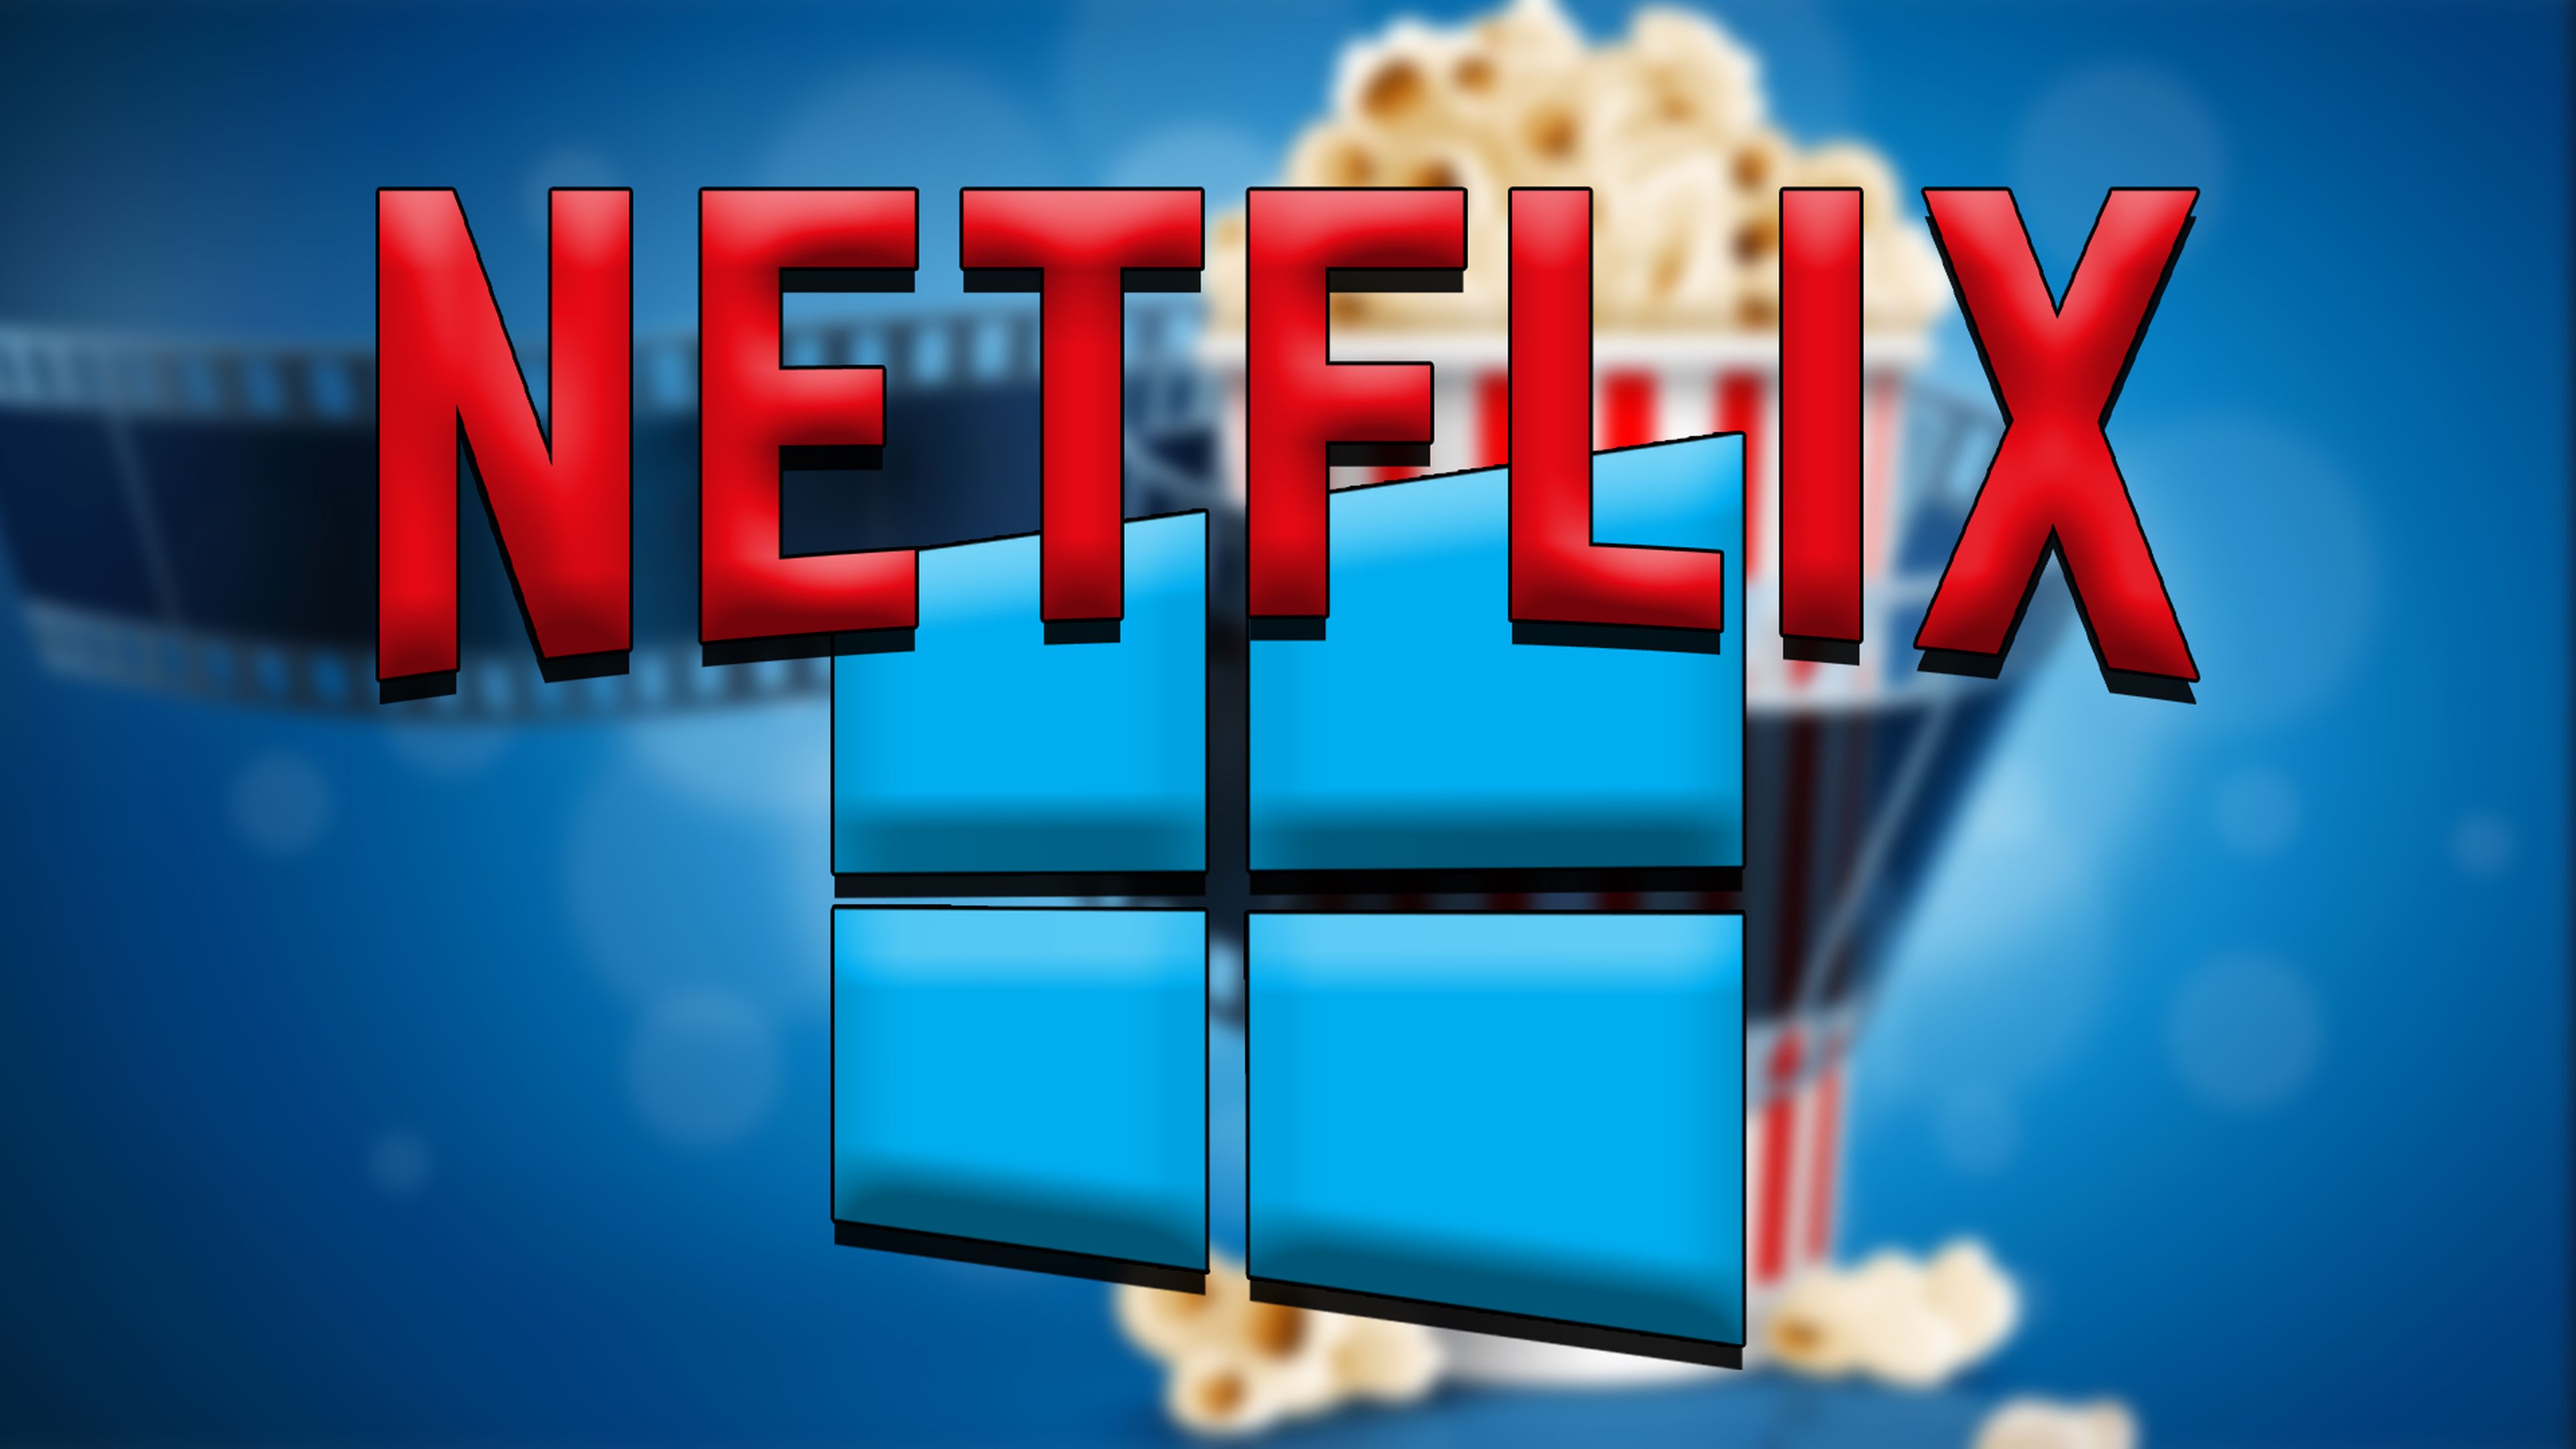 Ver mejor Netflix en Windows 10